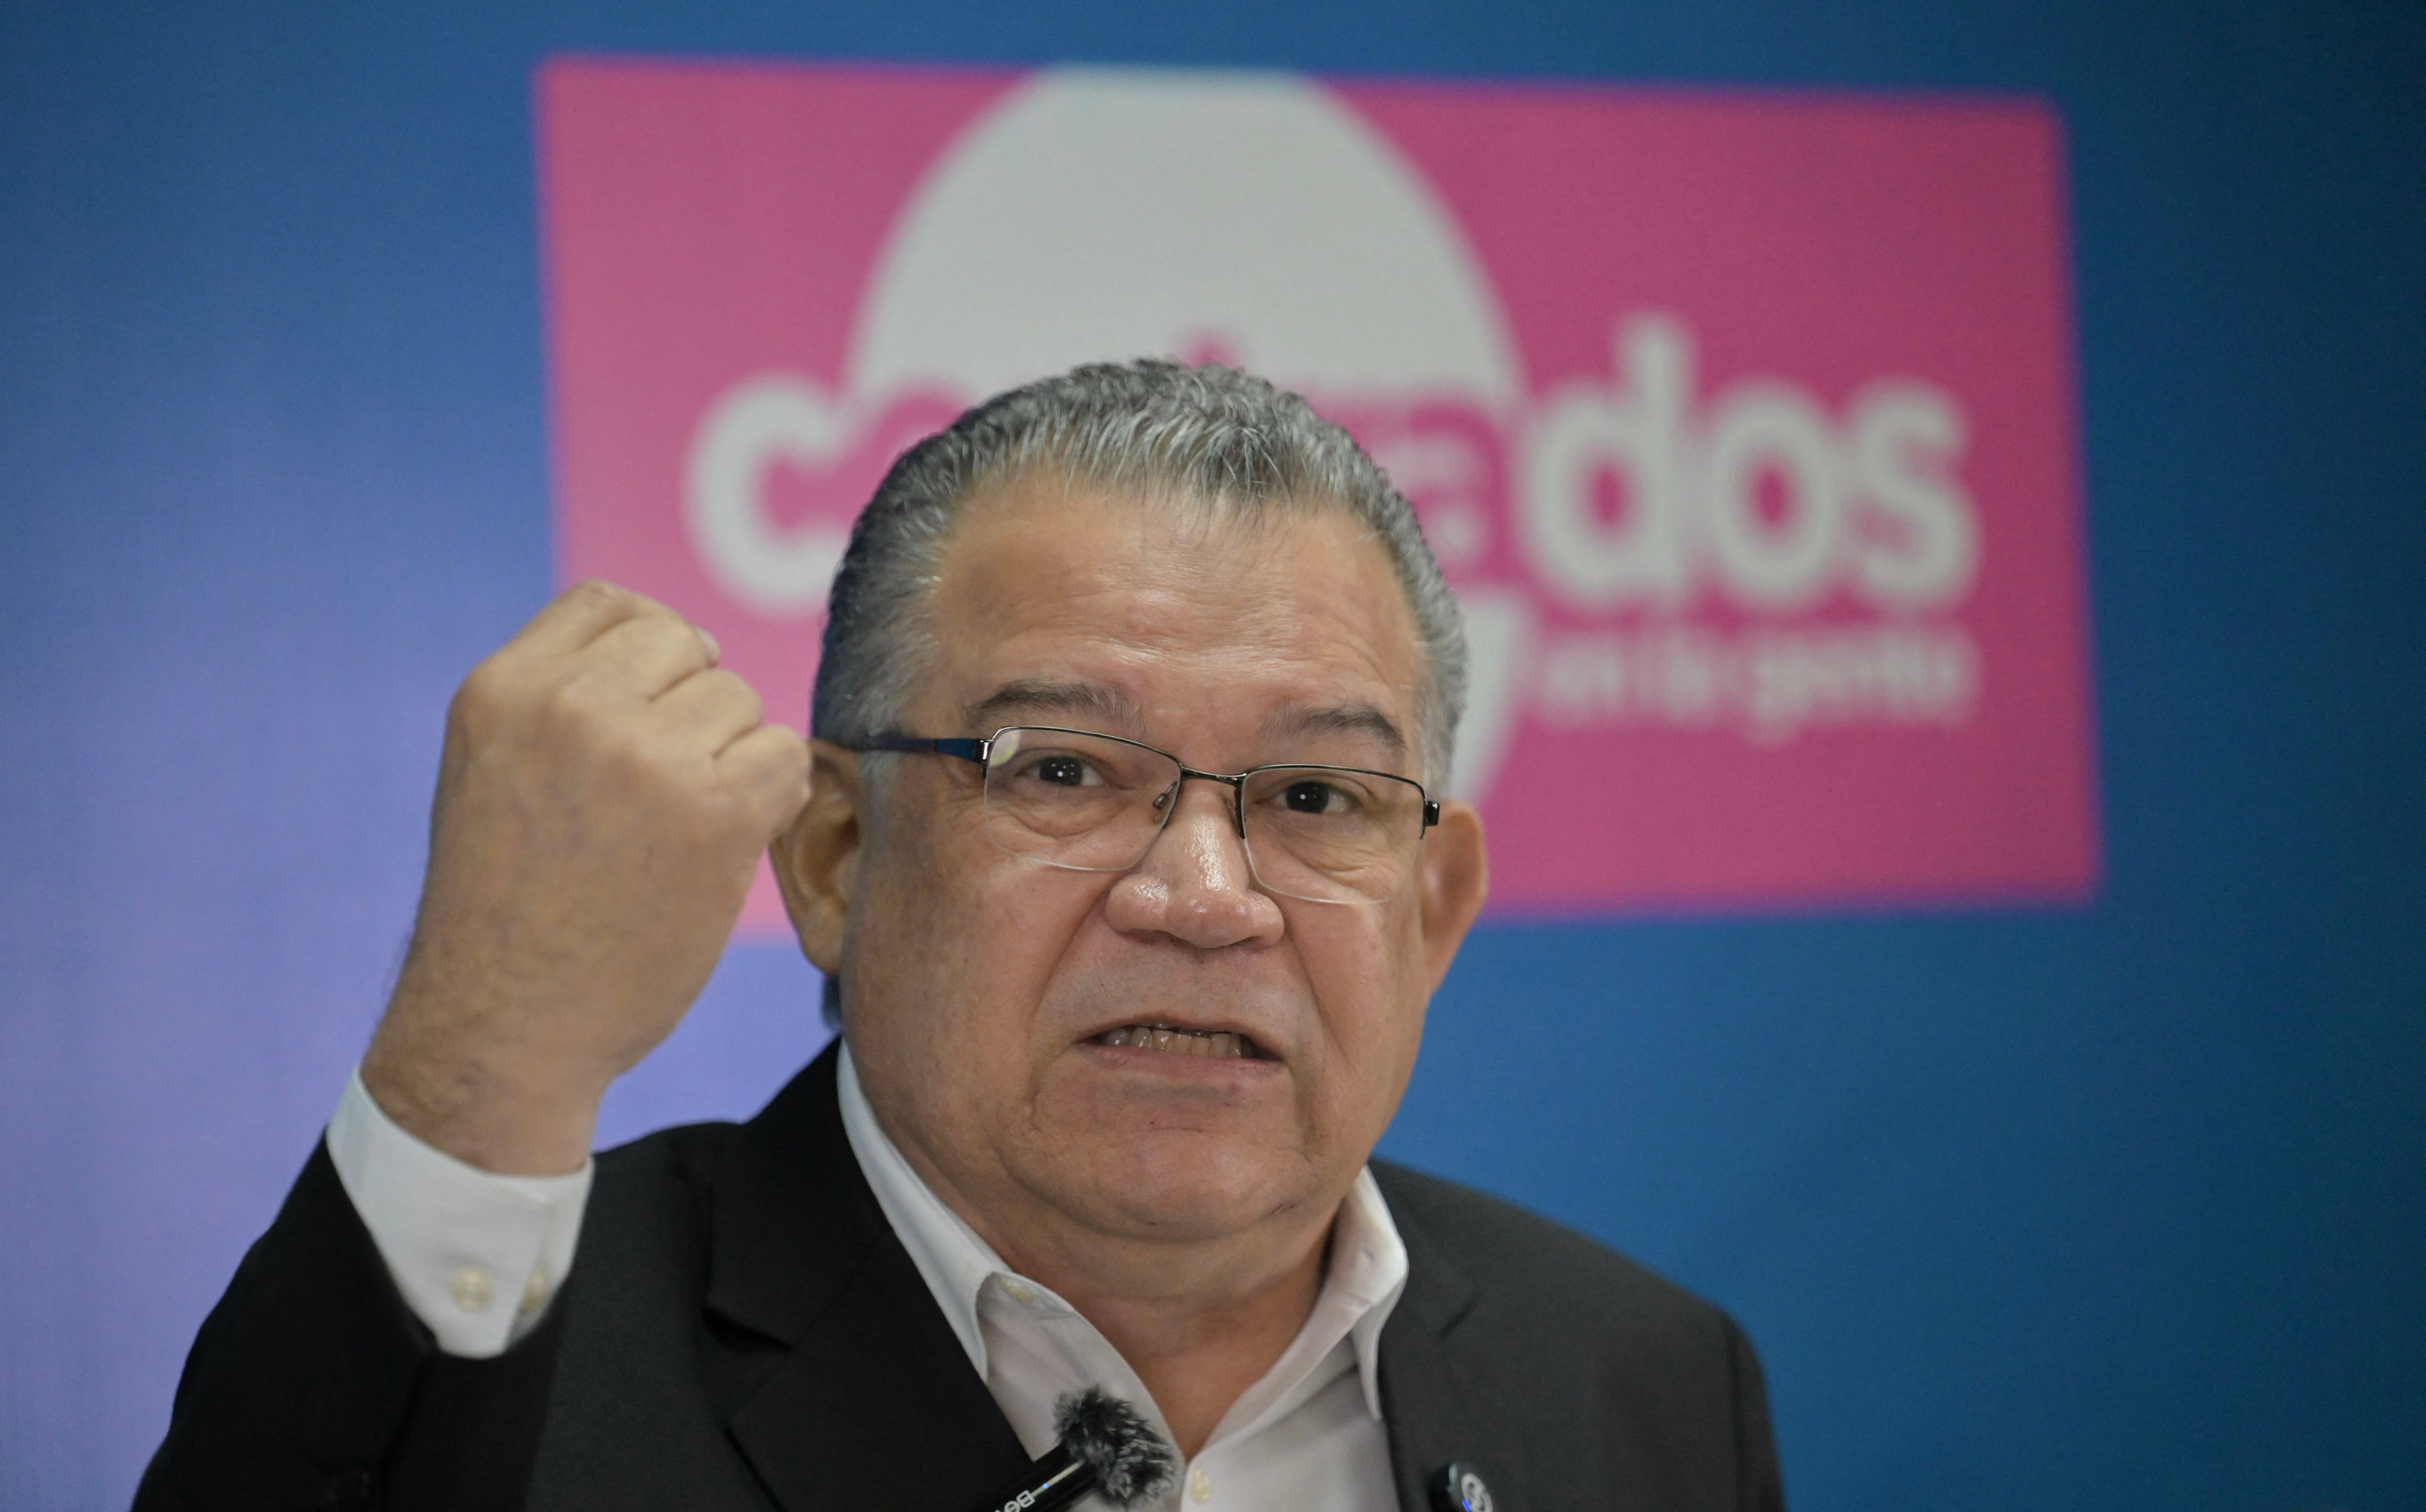 Enrique Márquez denunció que el gobierno de Nicolás Maduro intenta desalentar la participación electoral al detener a dirigentes opositores y generar desconfianza en el proceso electoral, con el fin de provocar abstención.